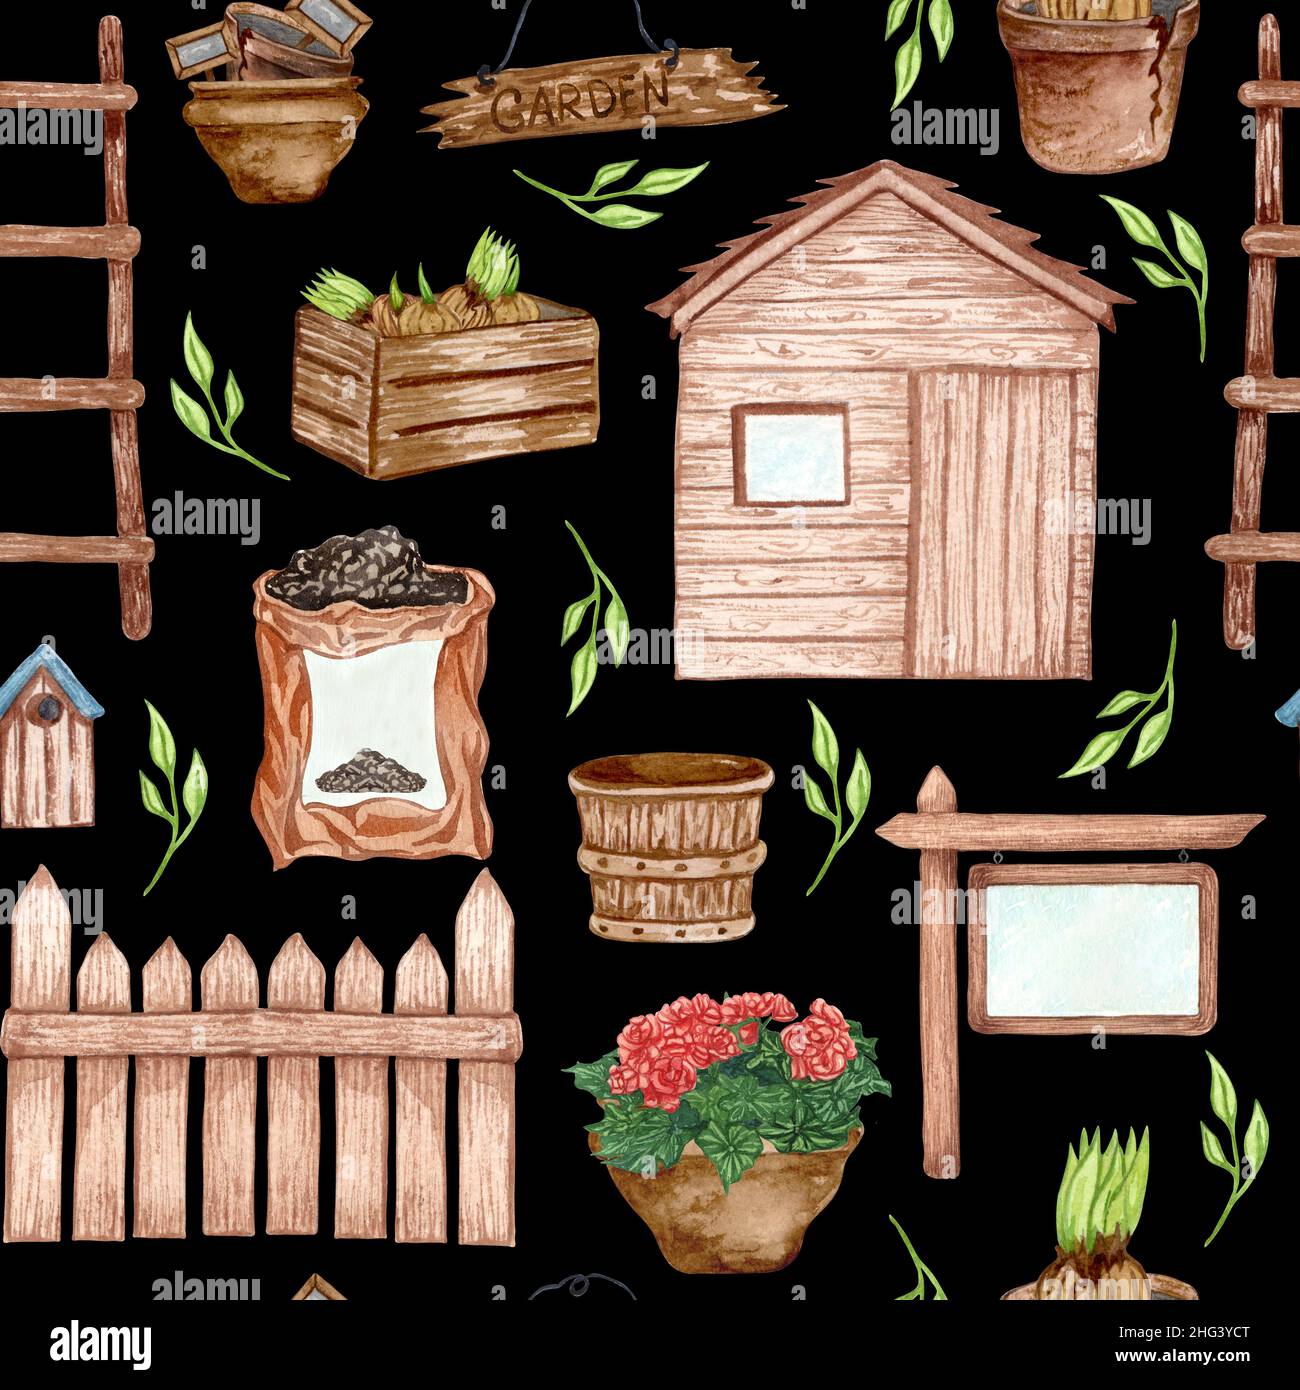 Aquarell nahtloses Muster von Gartenwerkzeug und Topfpflanzen. Gartenarbeit Hintergrund Stockfoto